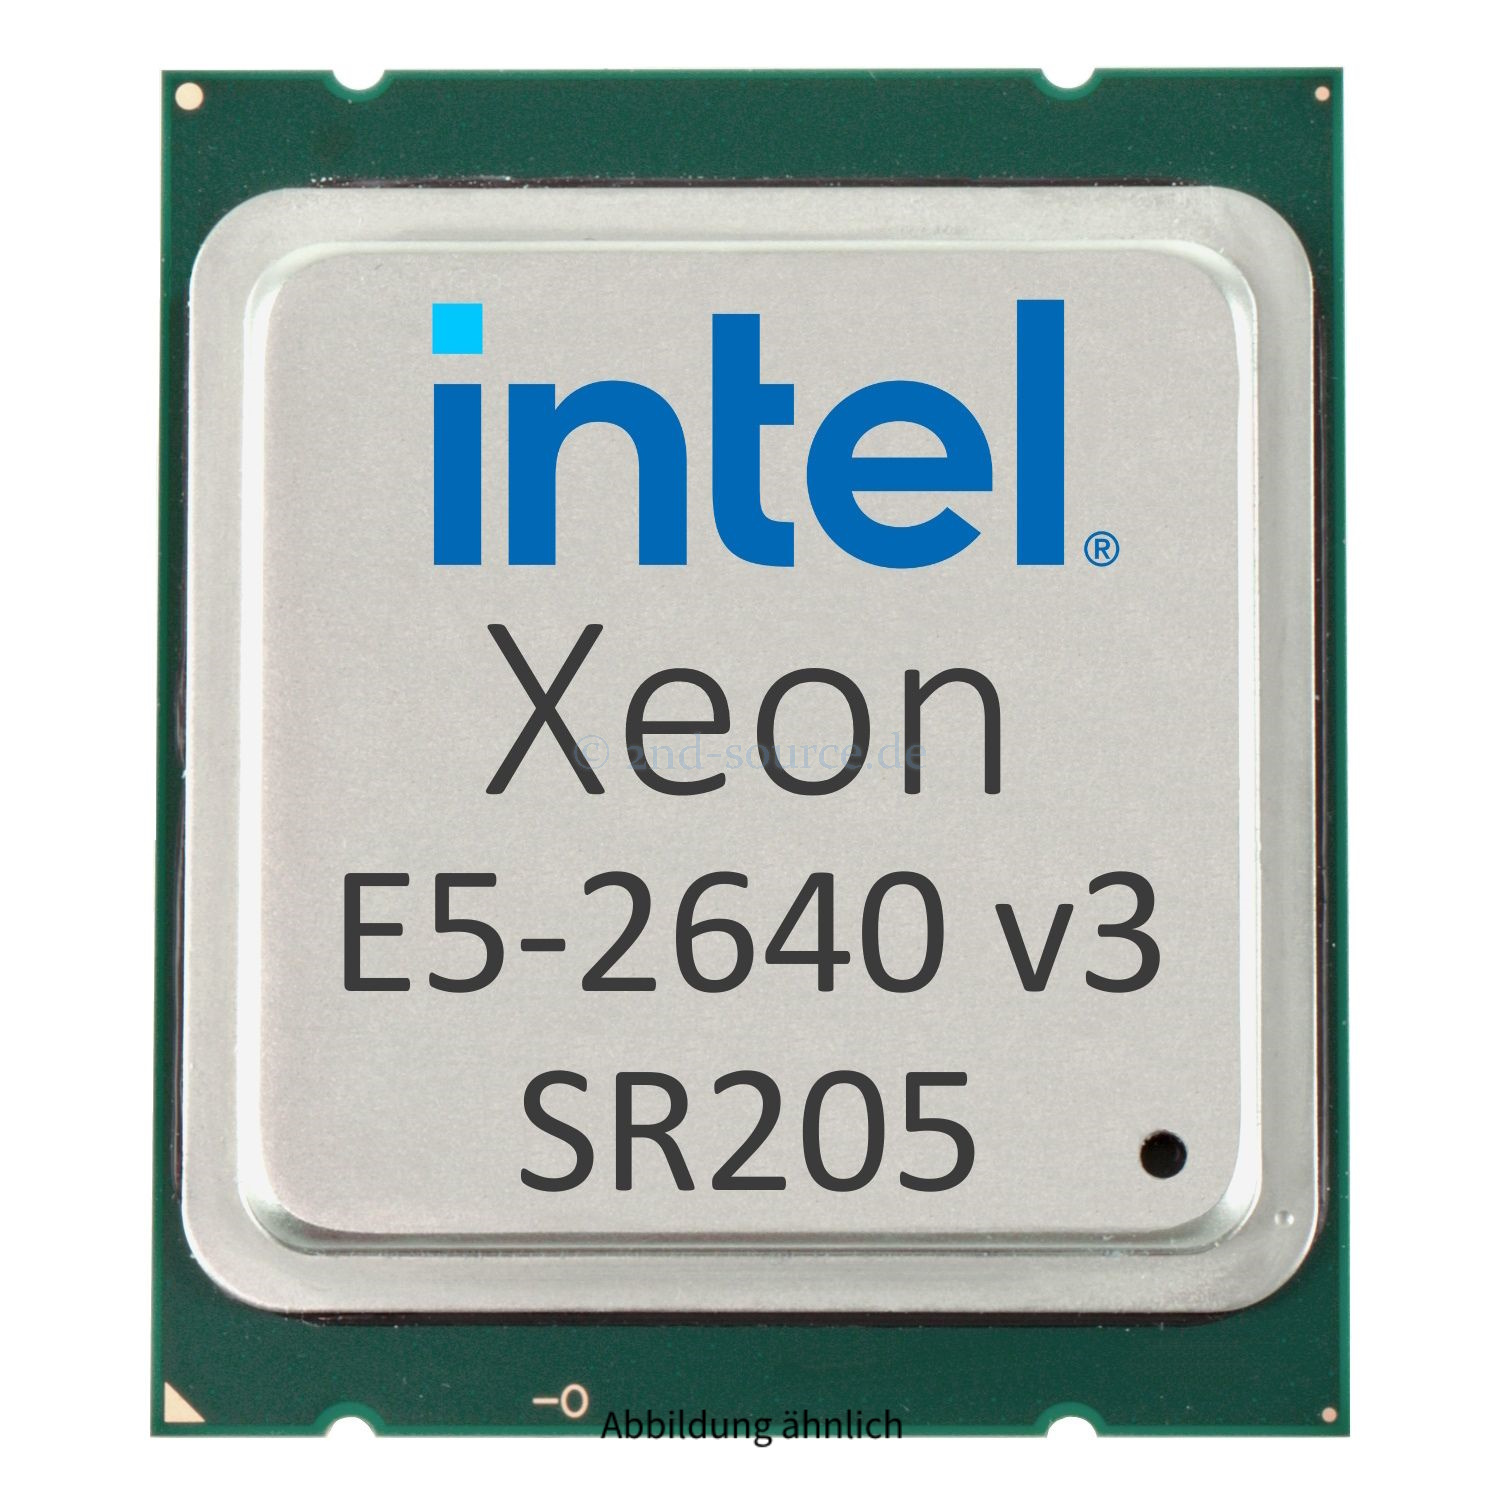 Intel Xeon E5-2640 v3 2.60GHz 20MB 8-Core CPU 90W SR205 CM8064401830901